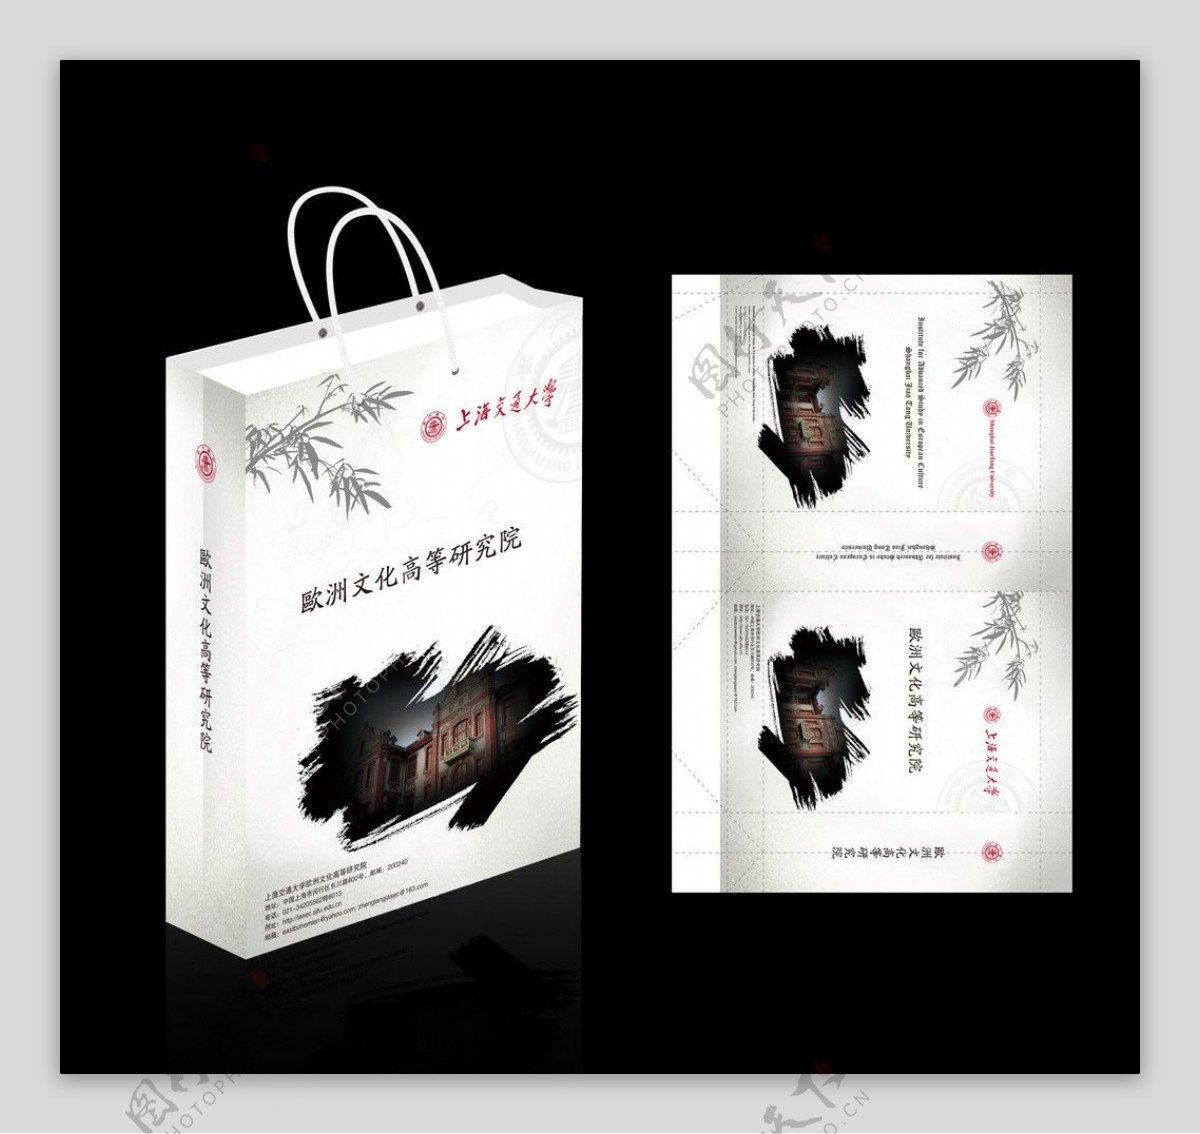 中国风风格手提袋设计图片